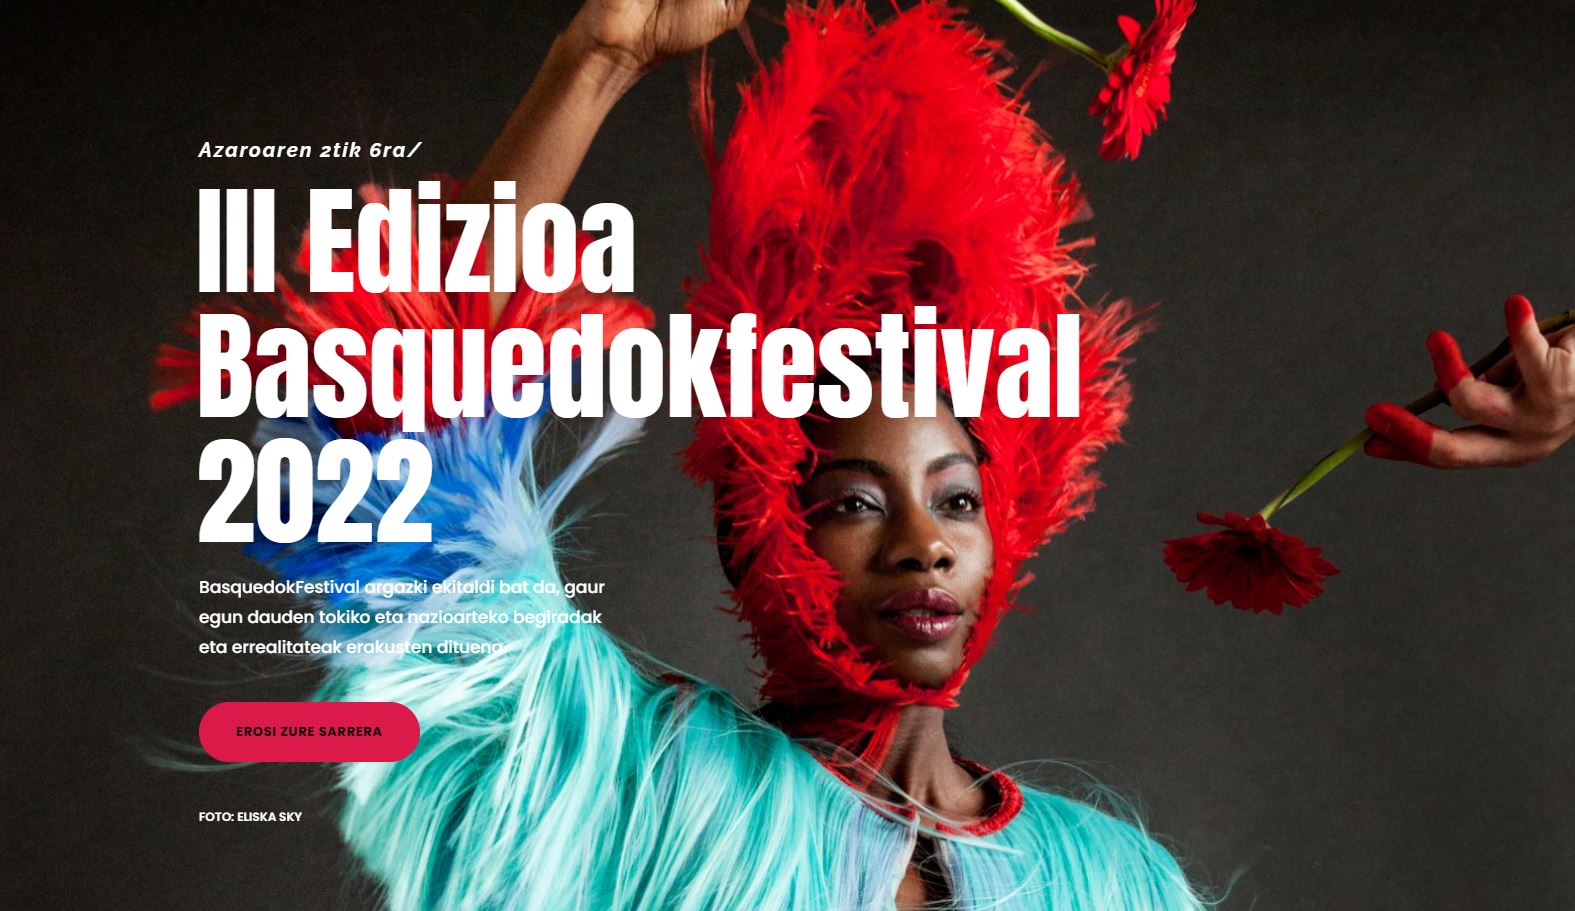 Vuelve la III Edición del Basquedokfestival 2022 / Badator Basquedokfestival 2022.